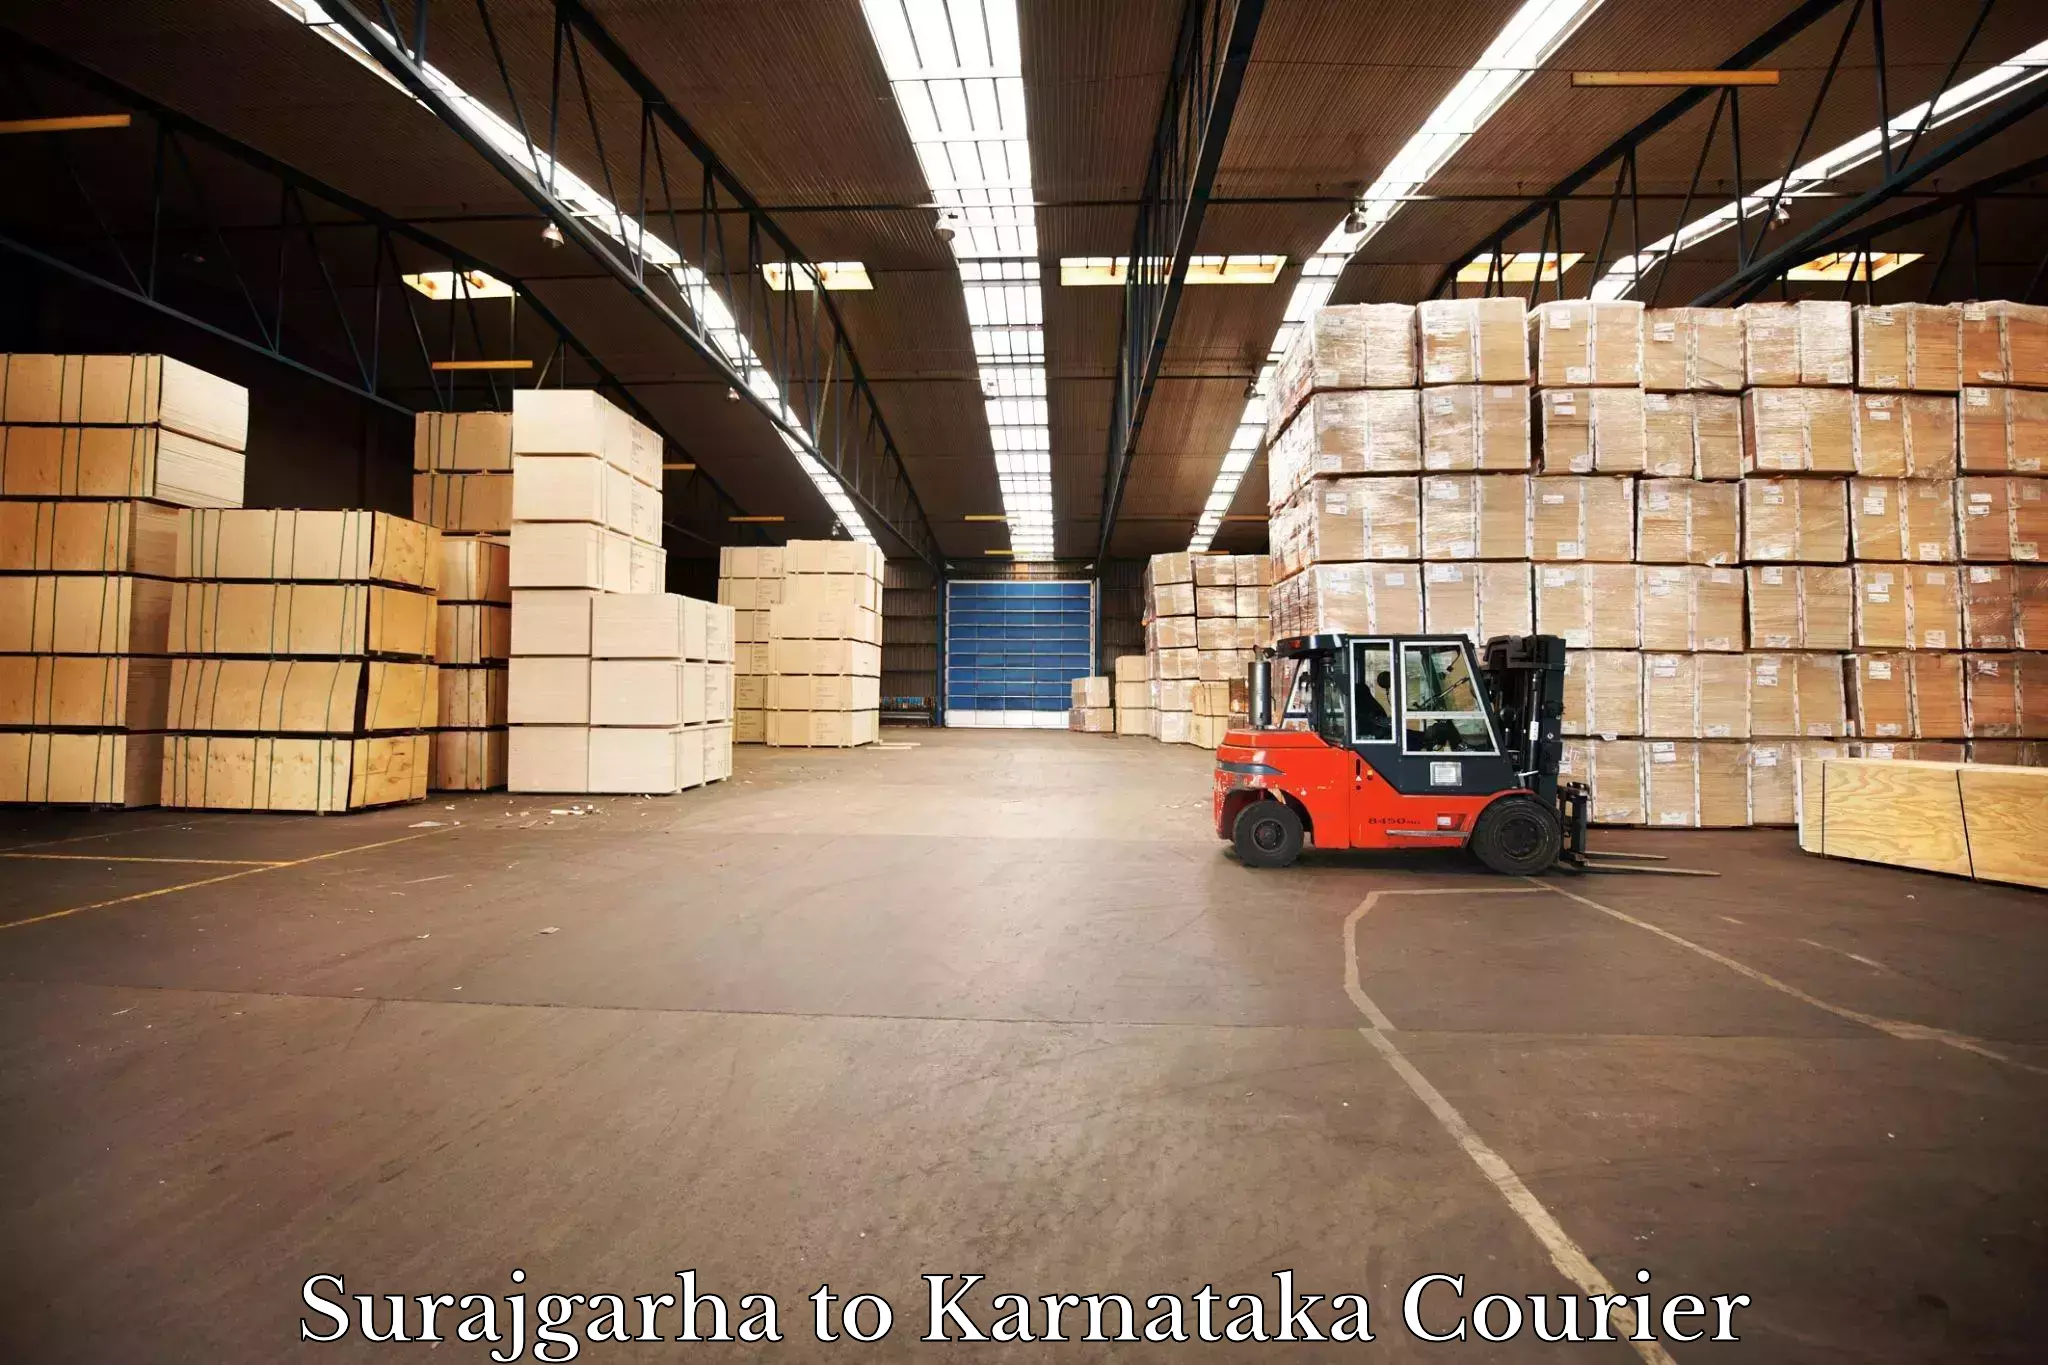 Ocean freight courier Surajgarha to Ukkadagatri